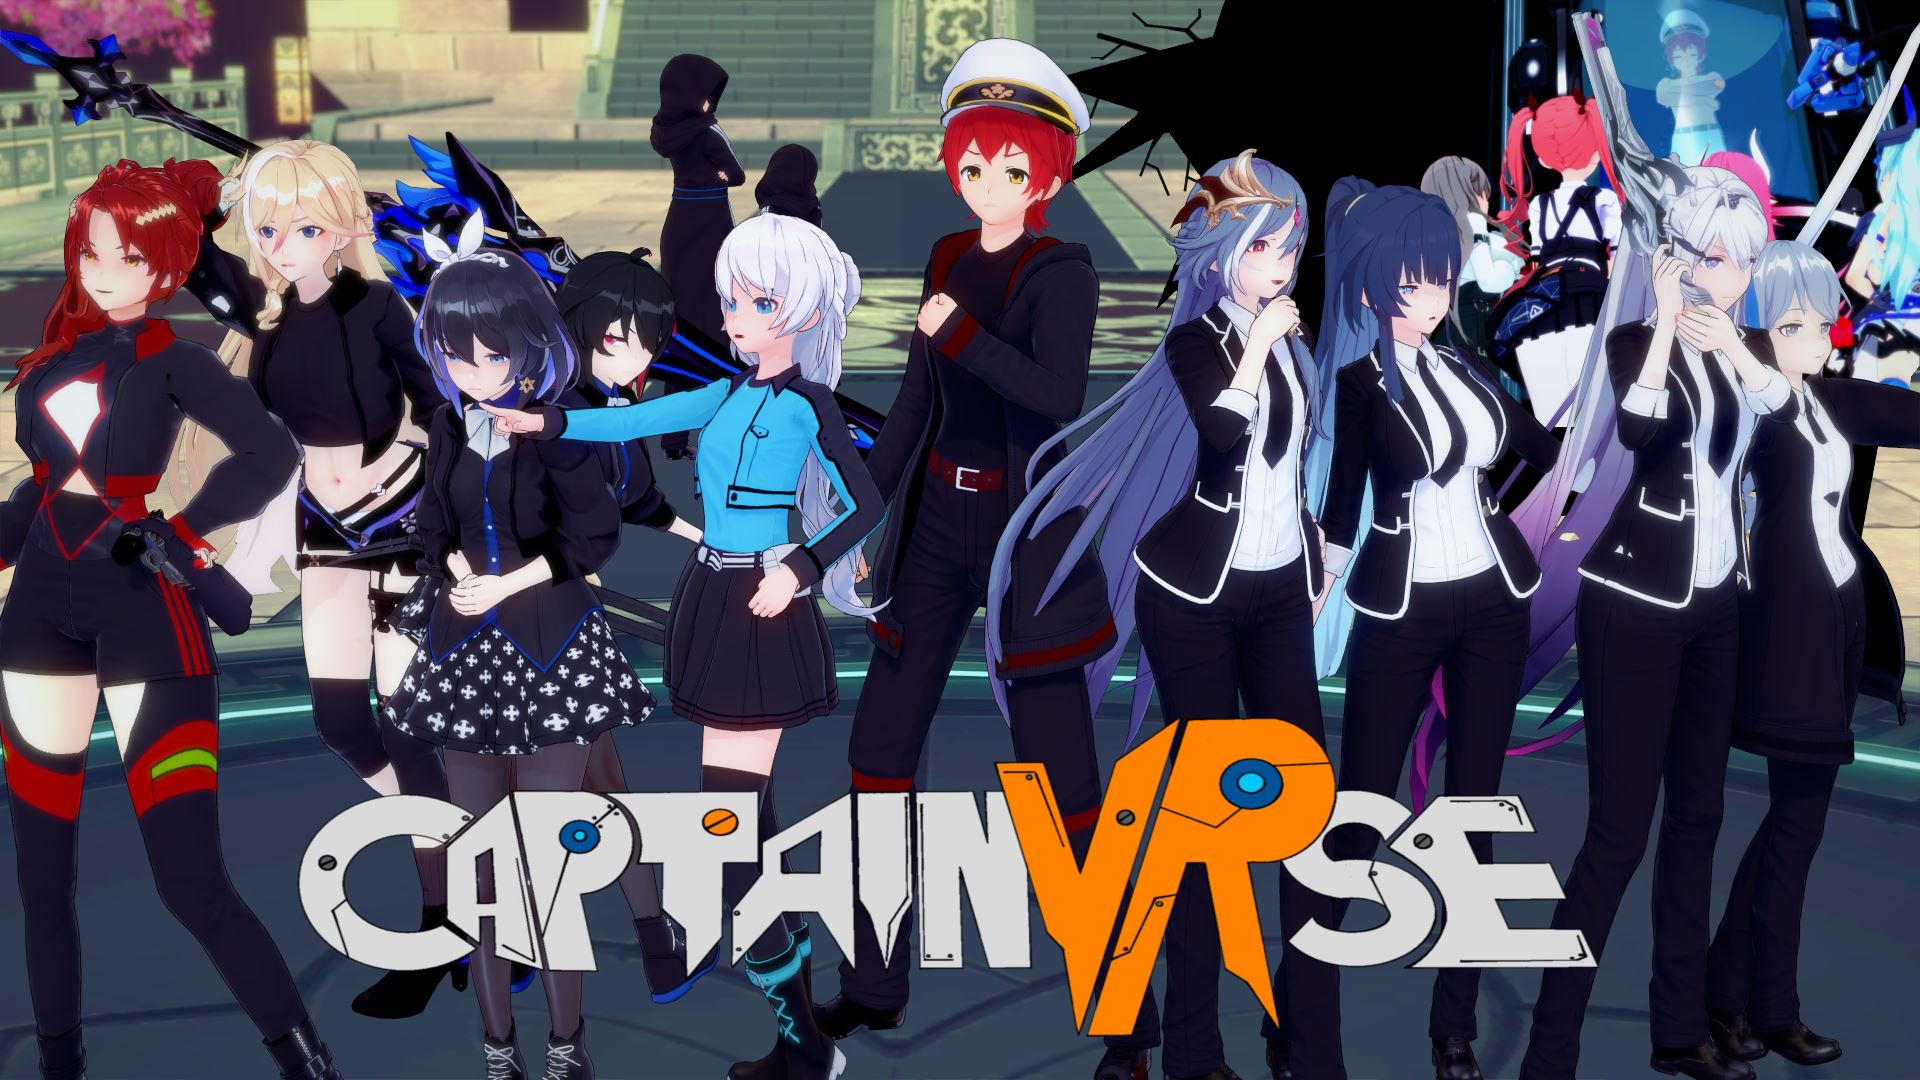 CaptainVRse porn xxx game download cover